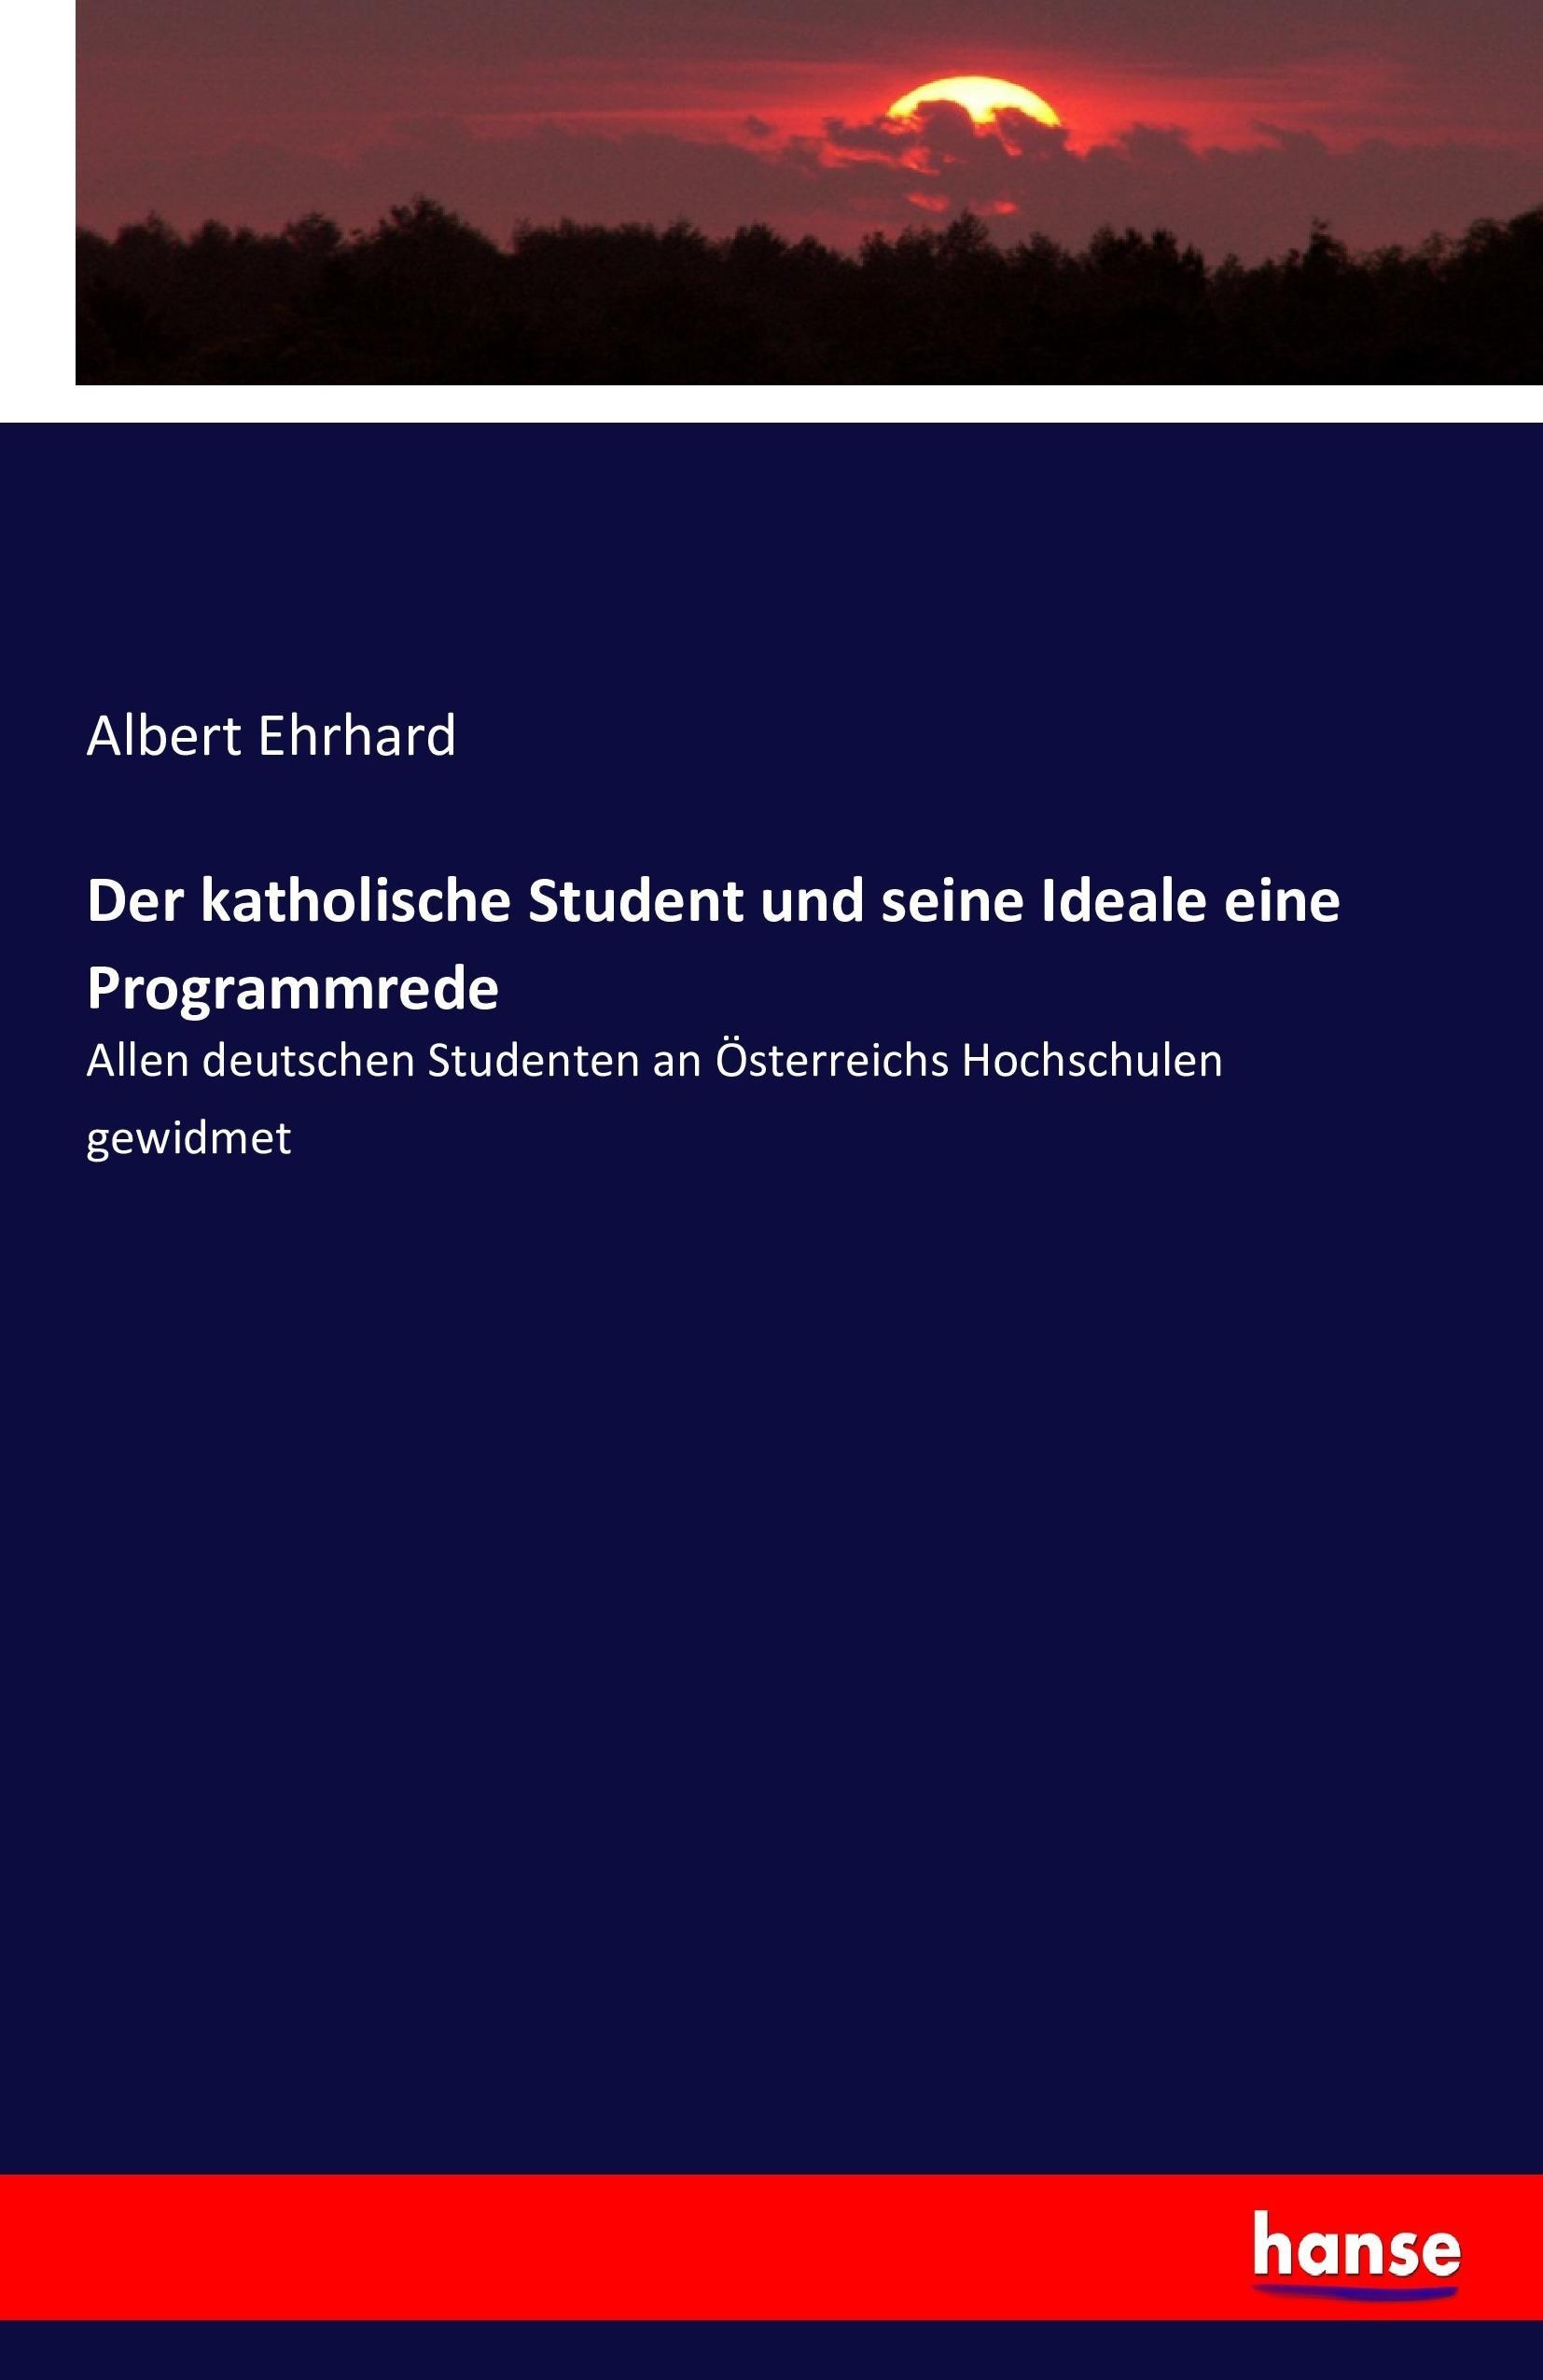 Der katholische Student und seine Ideale eine Programmrede - Ehrhard, Albert